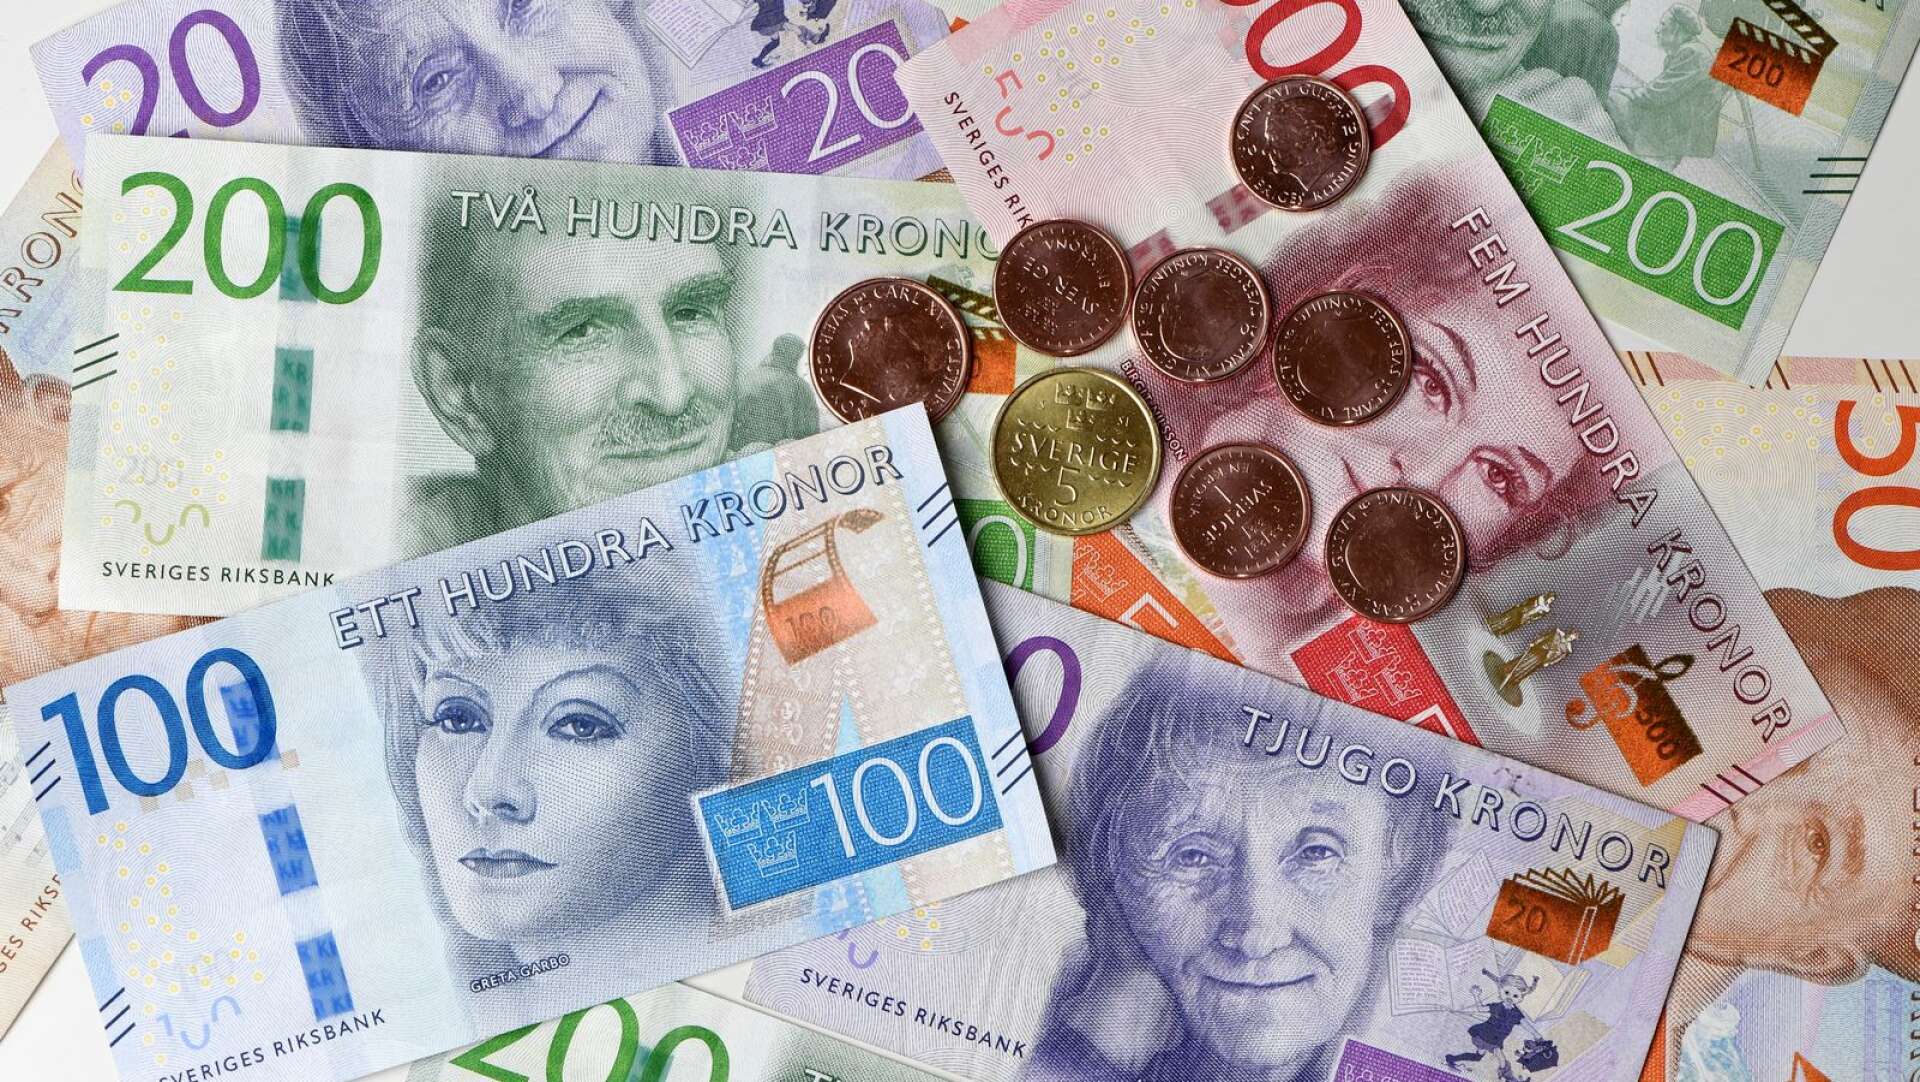 Enligt Riksbankslagen är kontanter lagliga betalningsmedel i Sverige och det innebär att vi ska kunna betala med dem överallt, skriver Per Scheutz.
